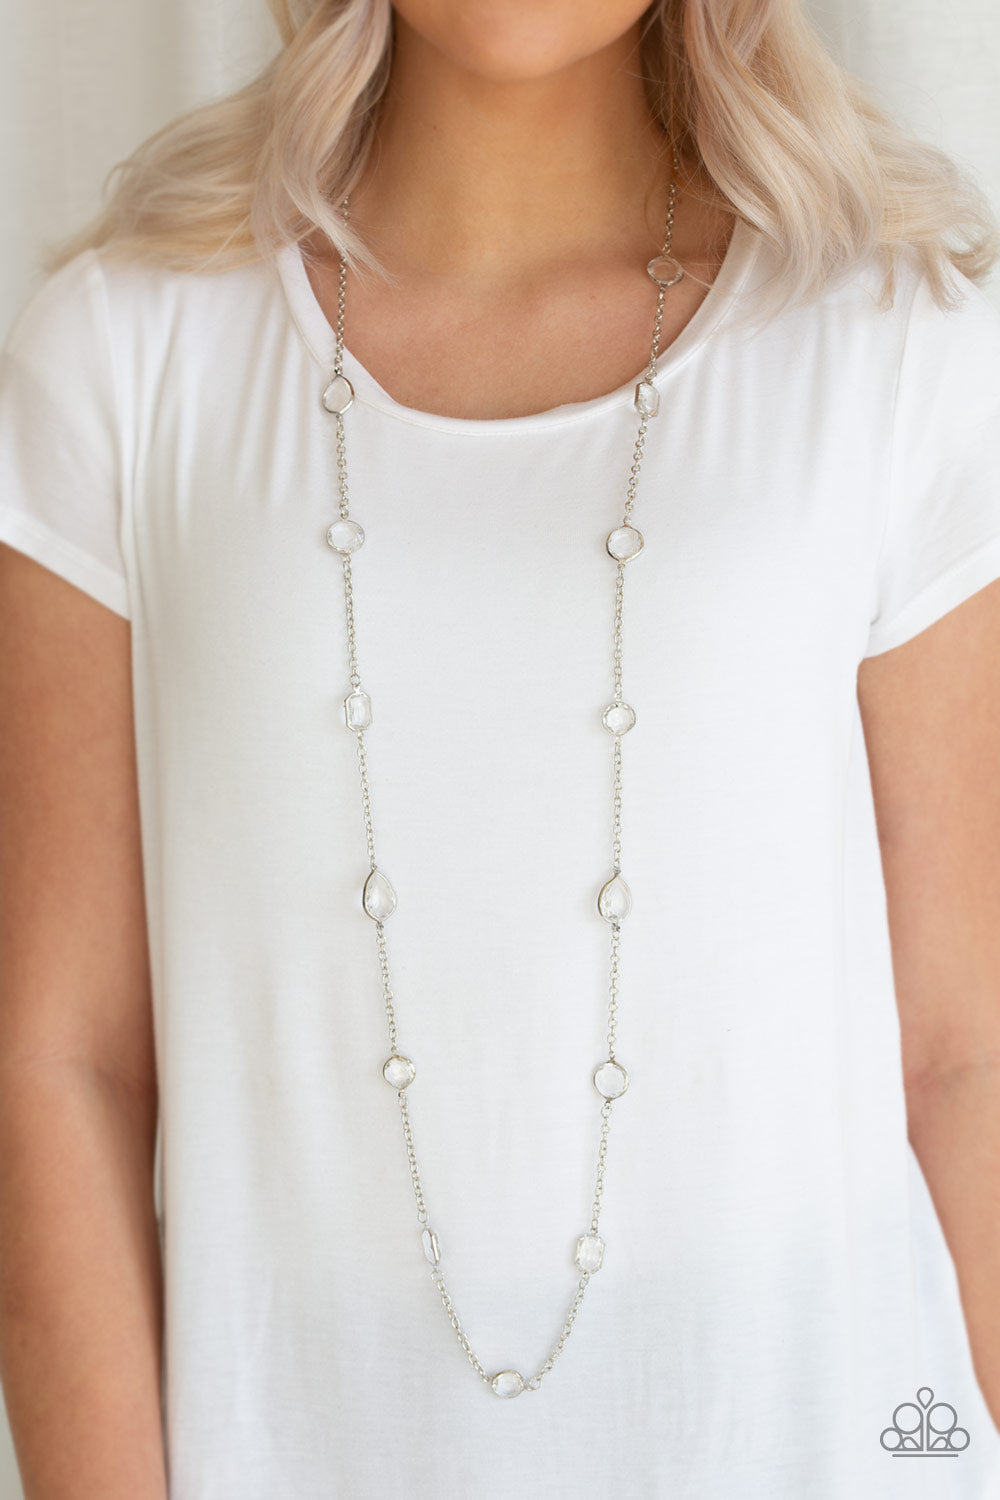 Glassy Glamorous - white - Paparazzi necklace